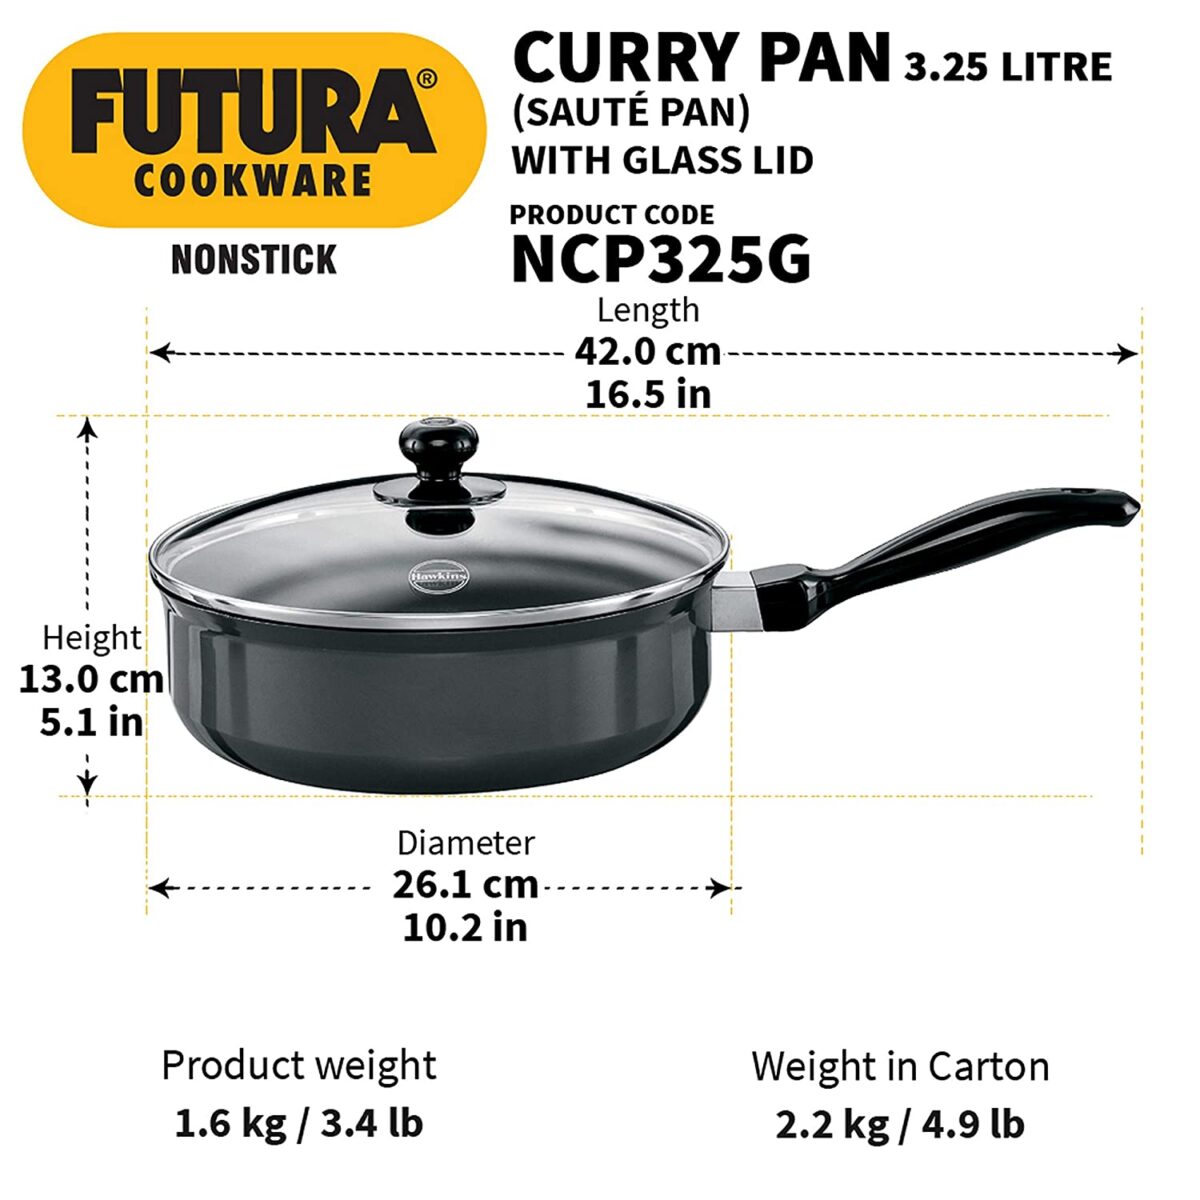 Cader Electromeubles - futura curry pan